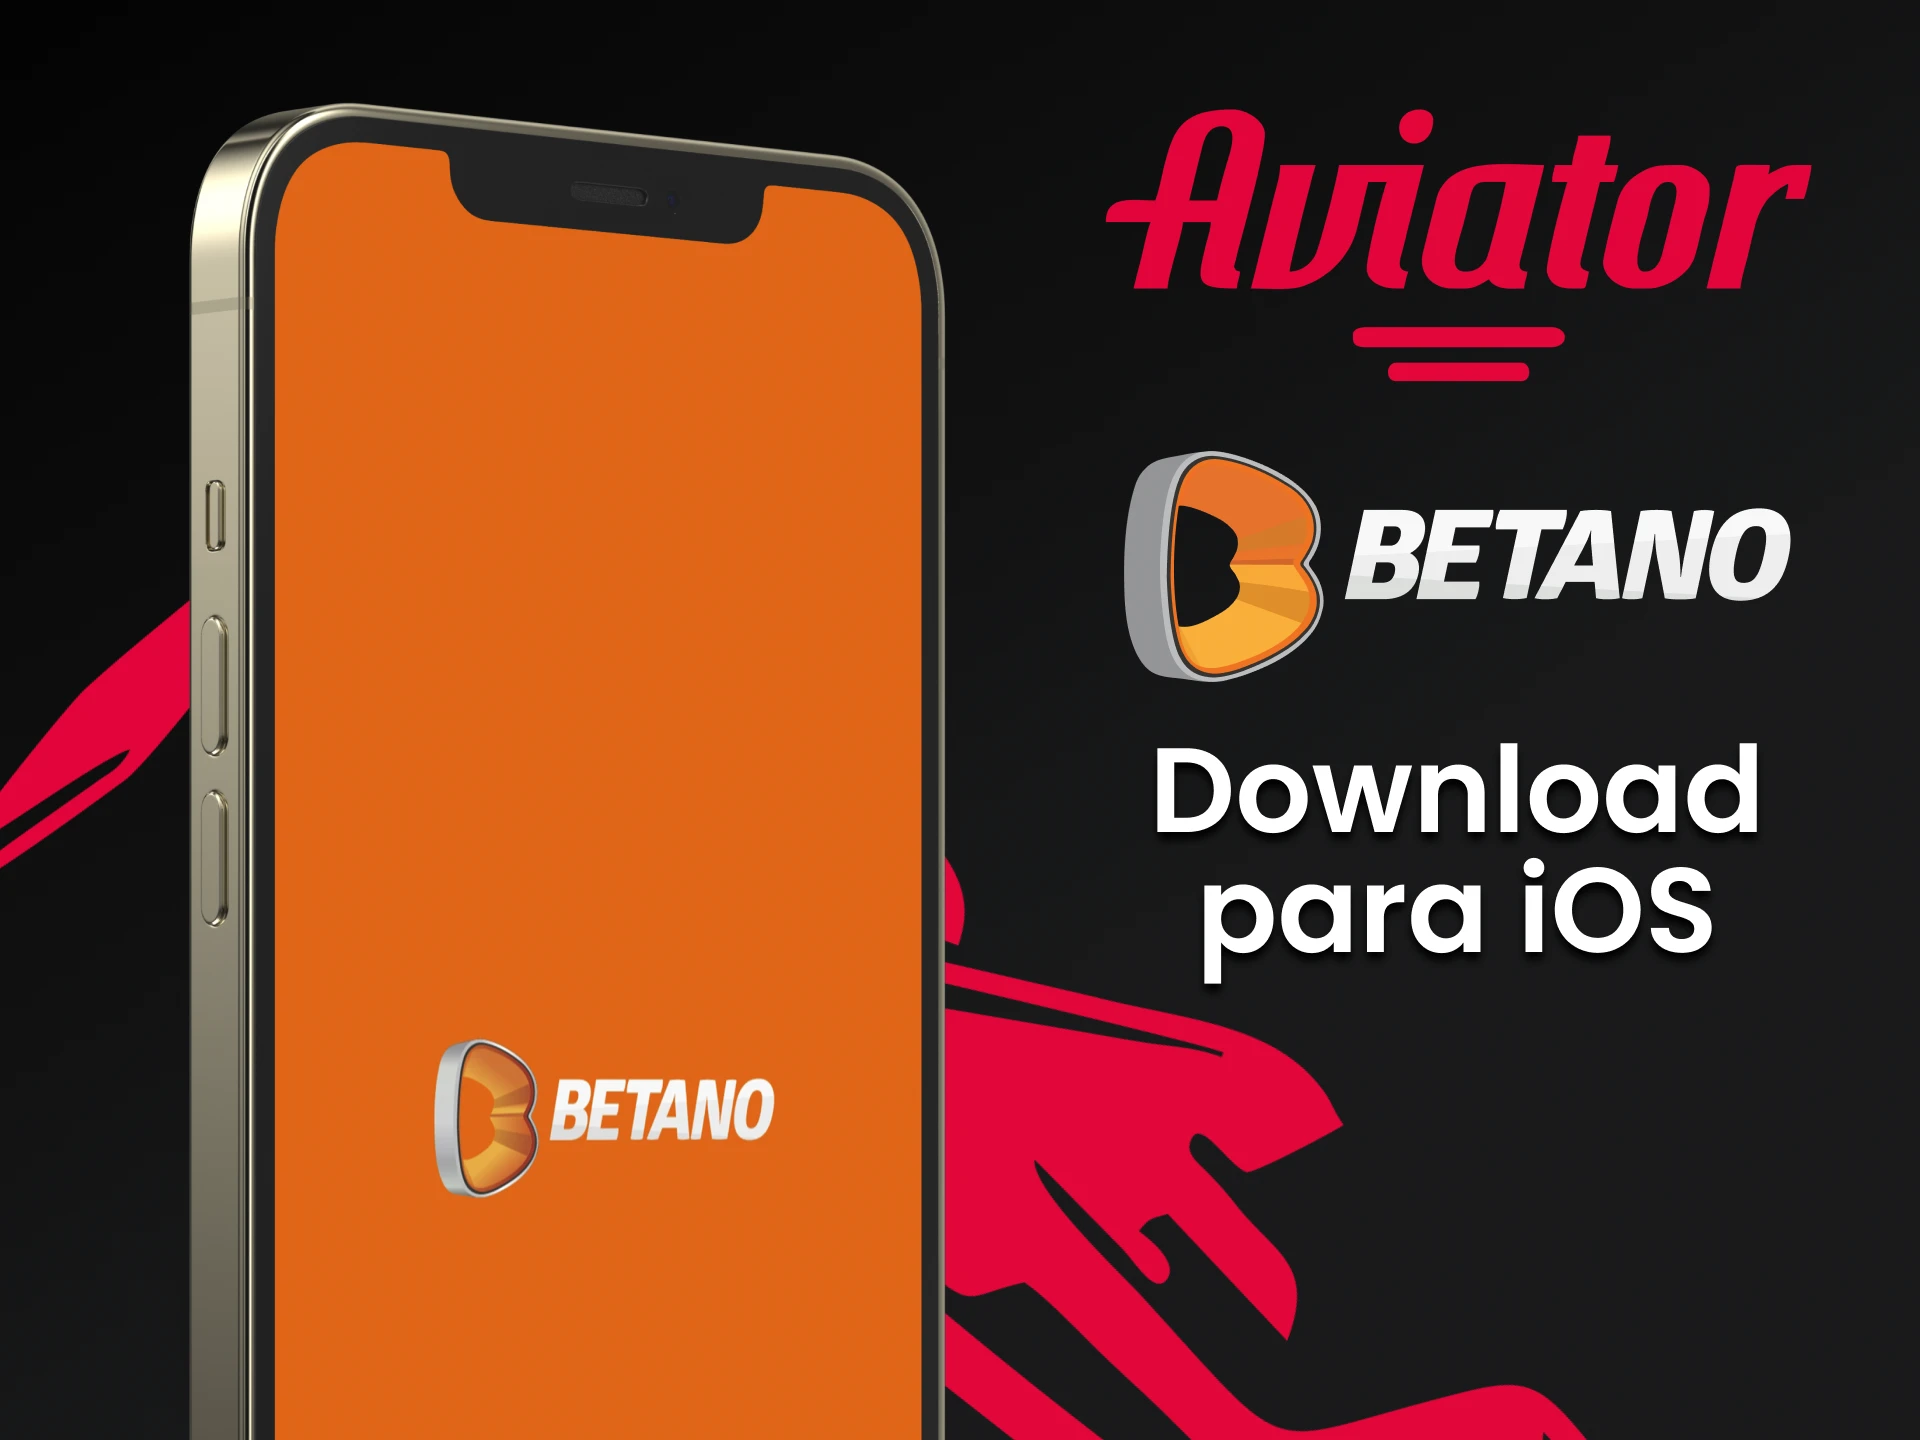 Baixe o aplicativo Betano para jogar Aviator no iOS.